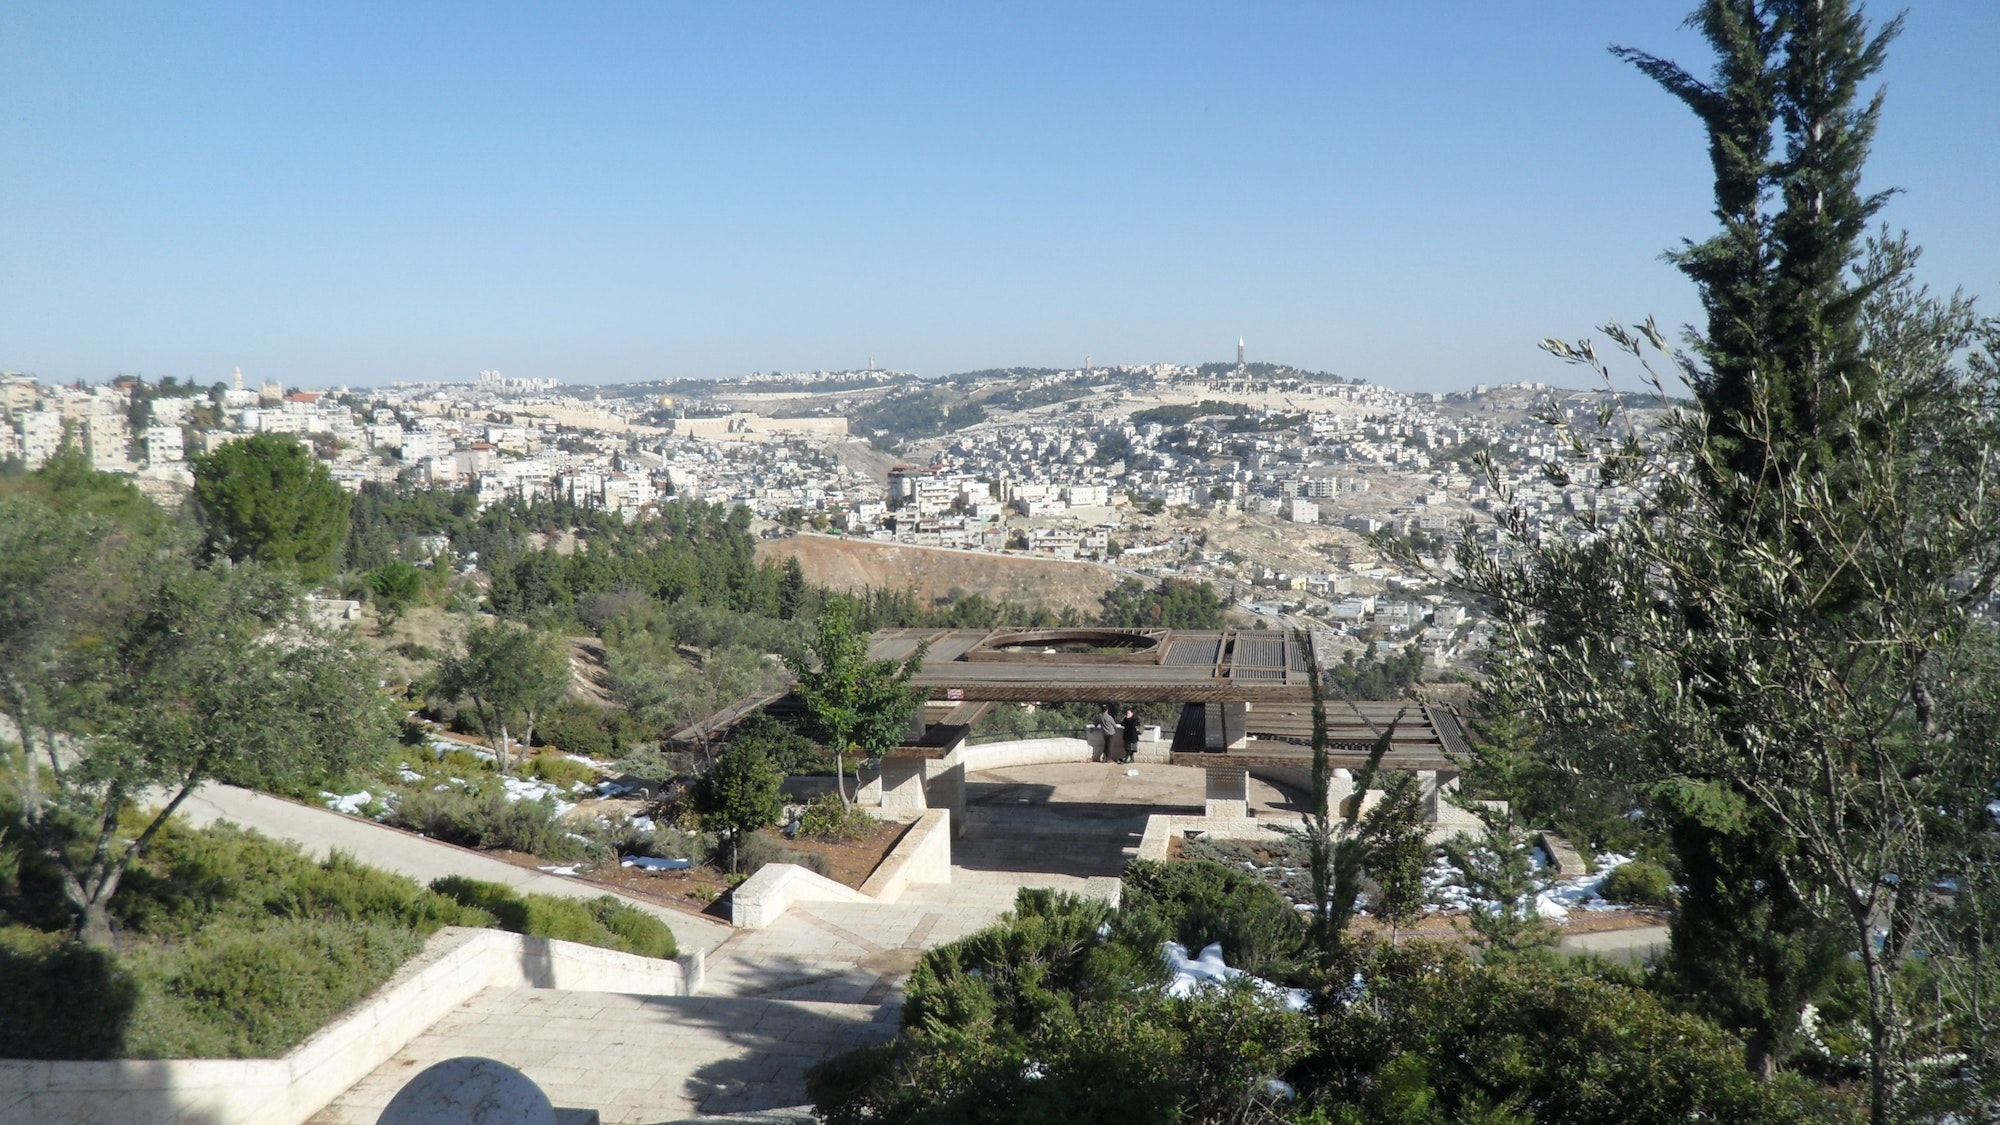 Jeruzsálem és a Templomhegy – Fotó: Purna Sreeramaneni / Unsplash